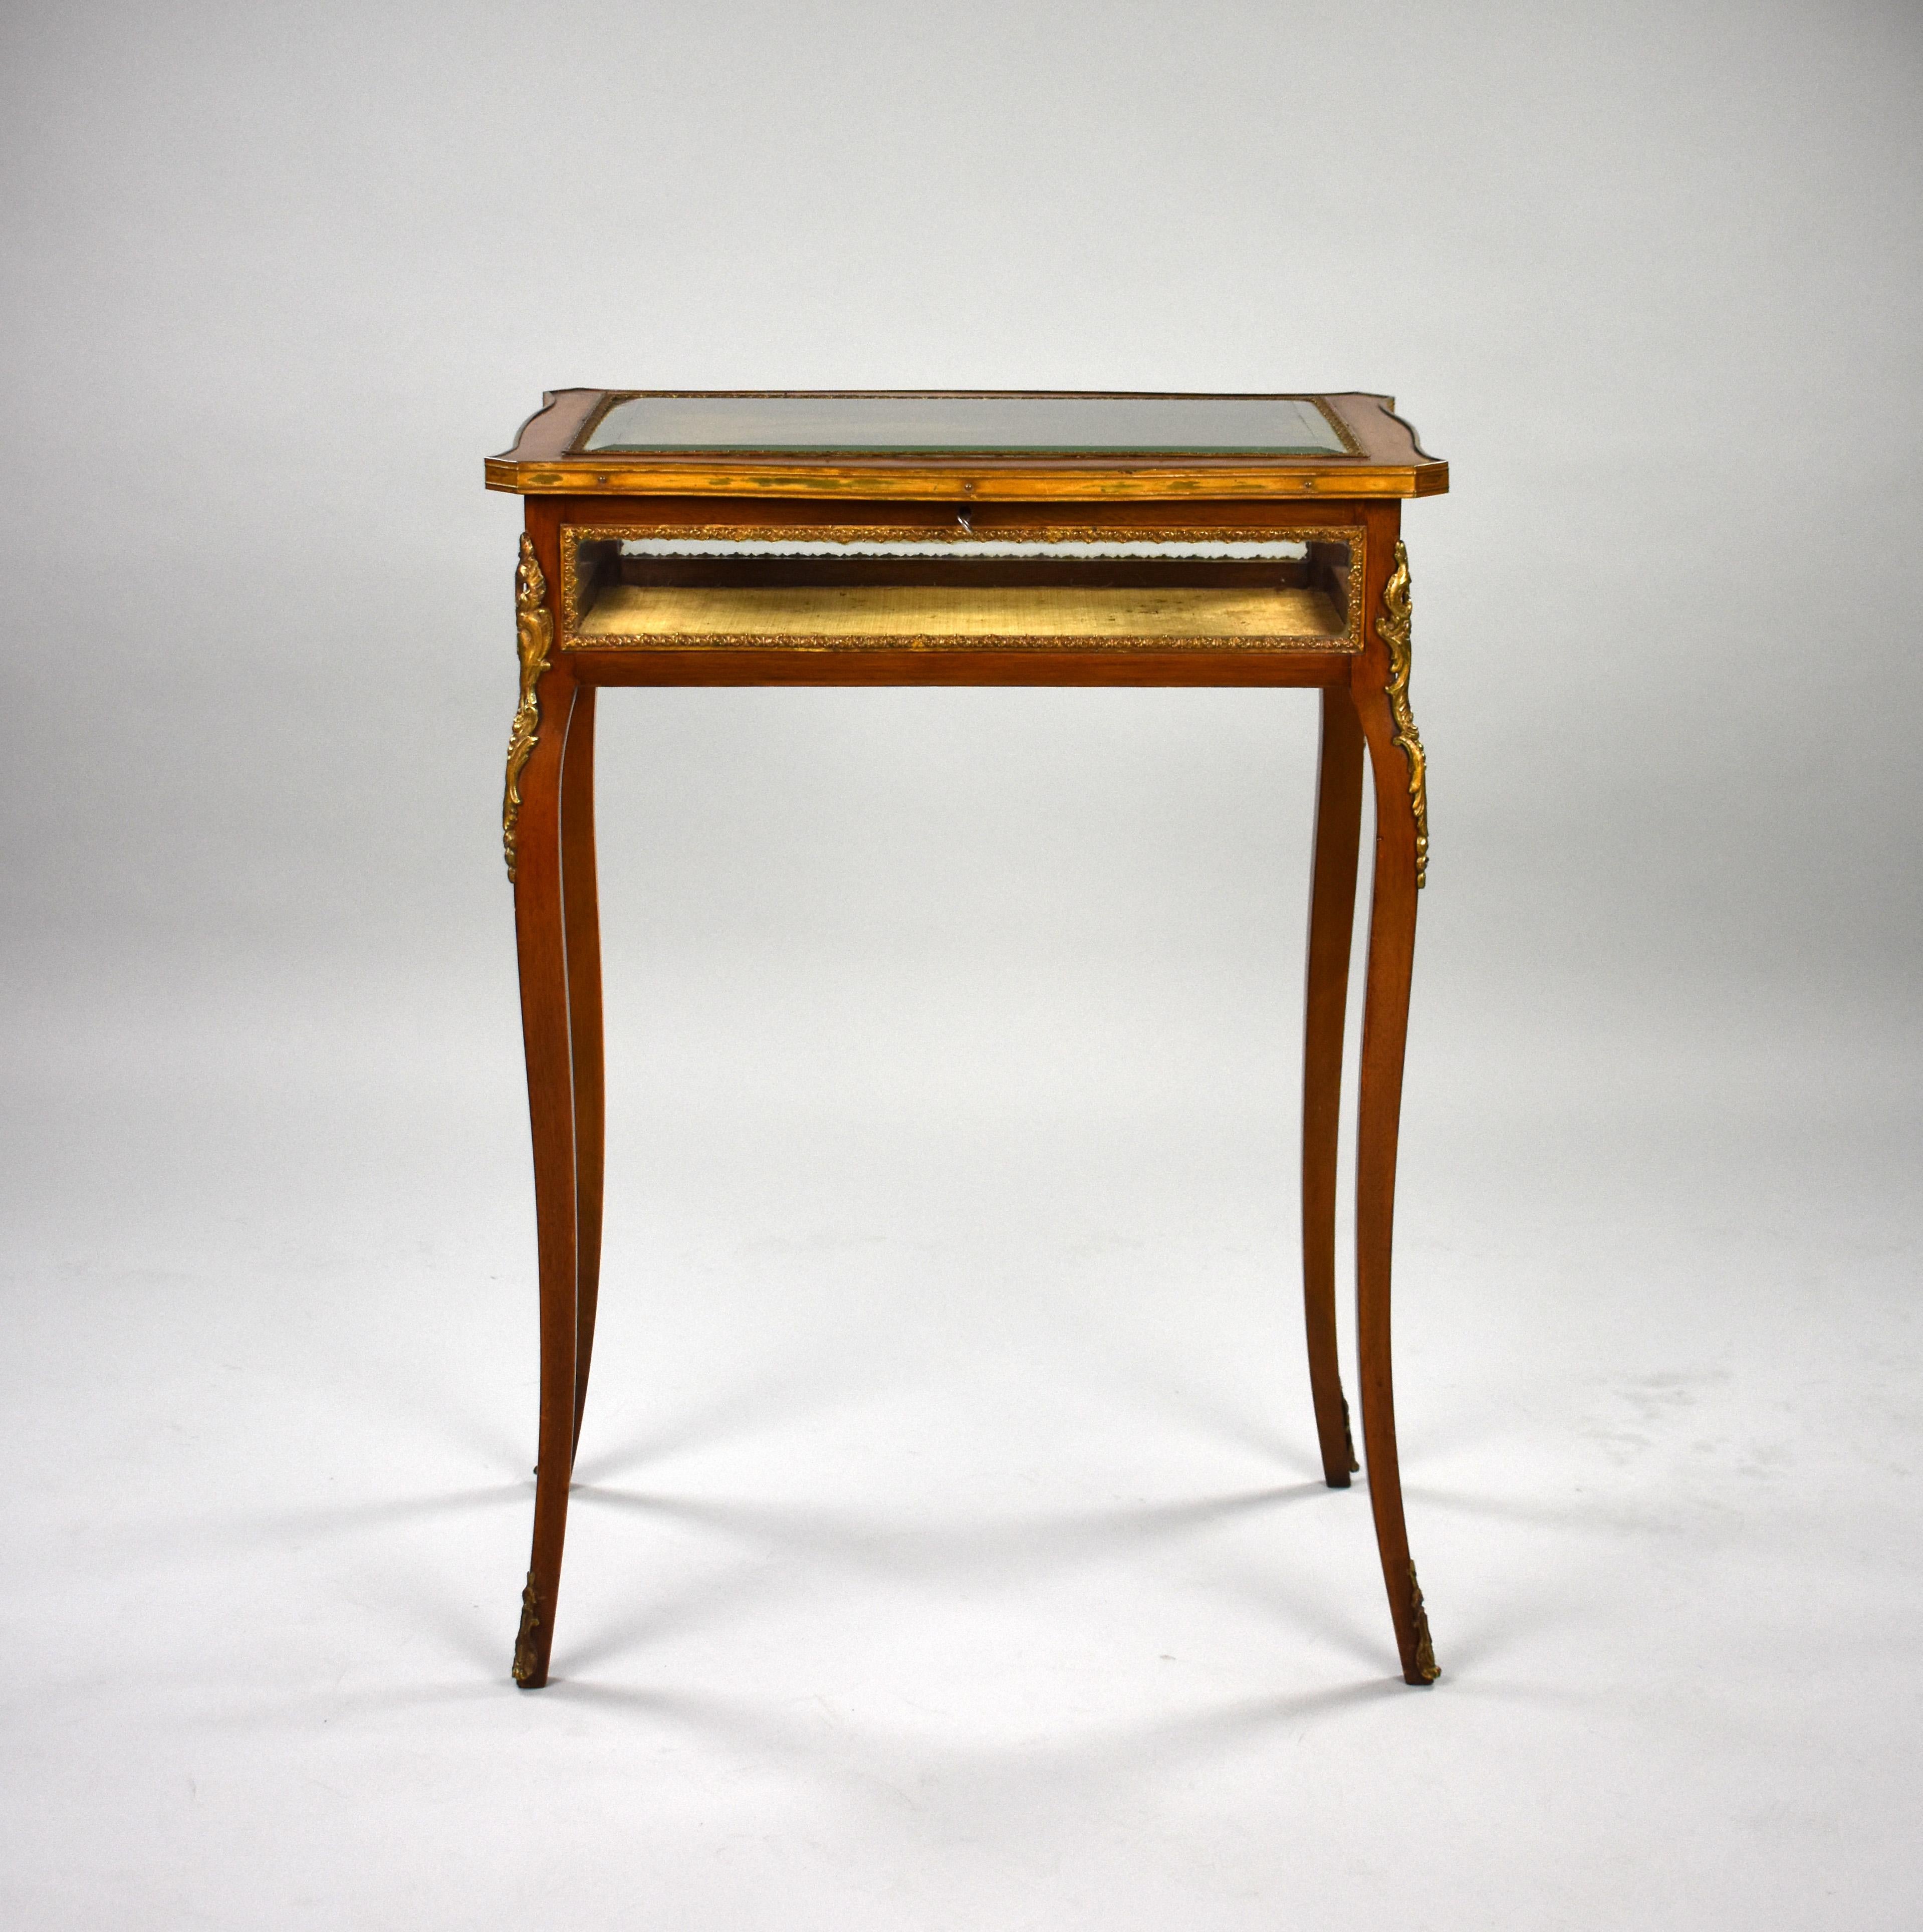 Il s'agit d'une table de bijouterie en acajou de bonne qualité datant du 19ème siècle, décorée de montures en laiton, le couvercle s'ouvrant sur un intérieur tapissé de tissu. La table est en très bon état pour son âge. 

Mesures : Largeur : 59cm